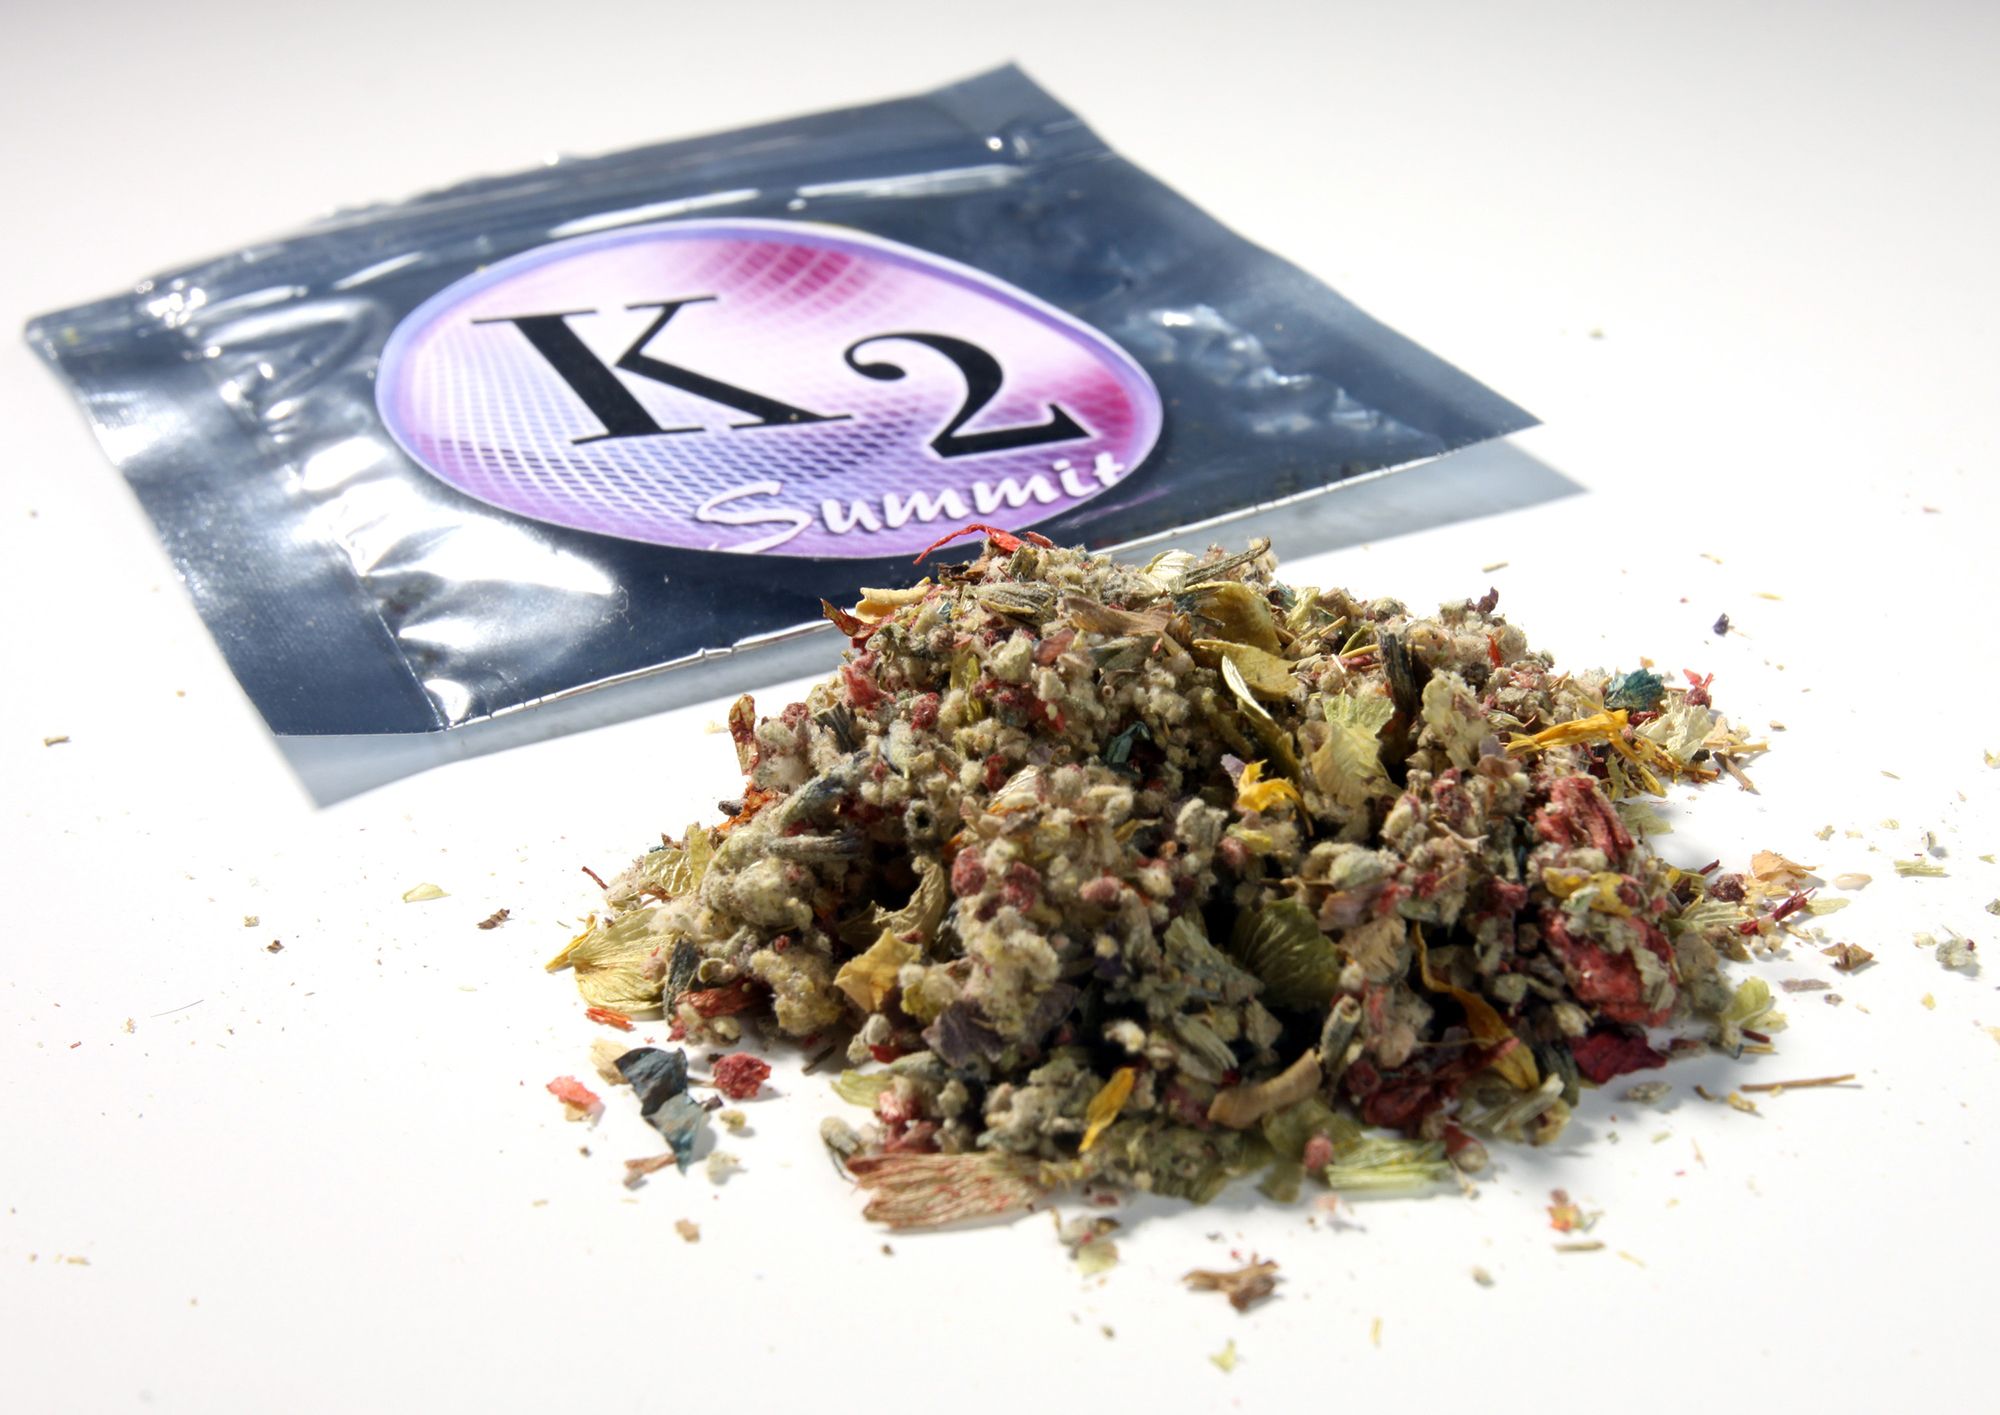 Spice (K2, Synthetic Marijuana, Synthetic Weed) - Health Street